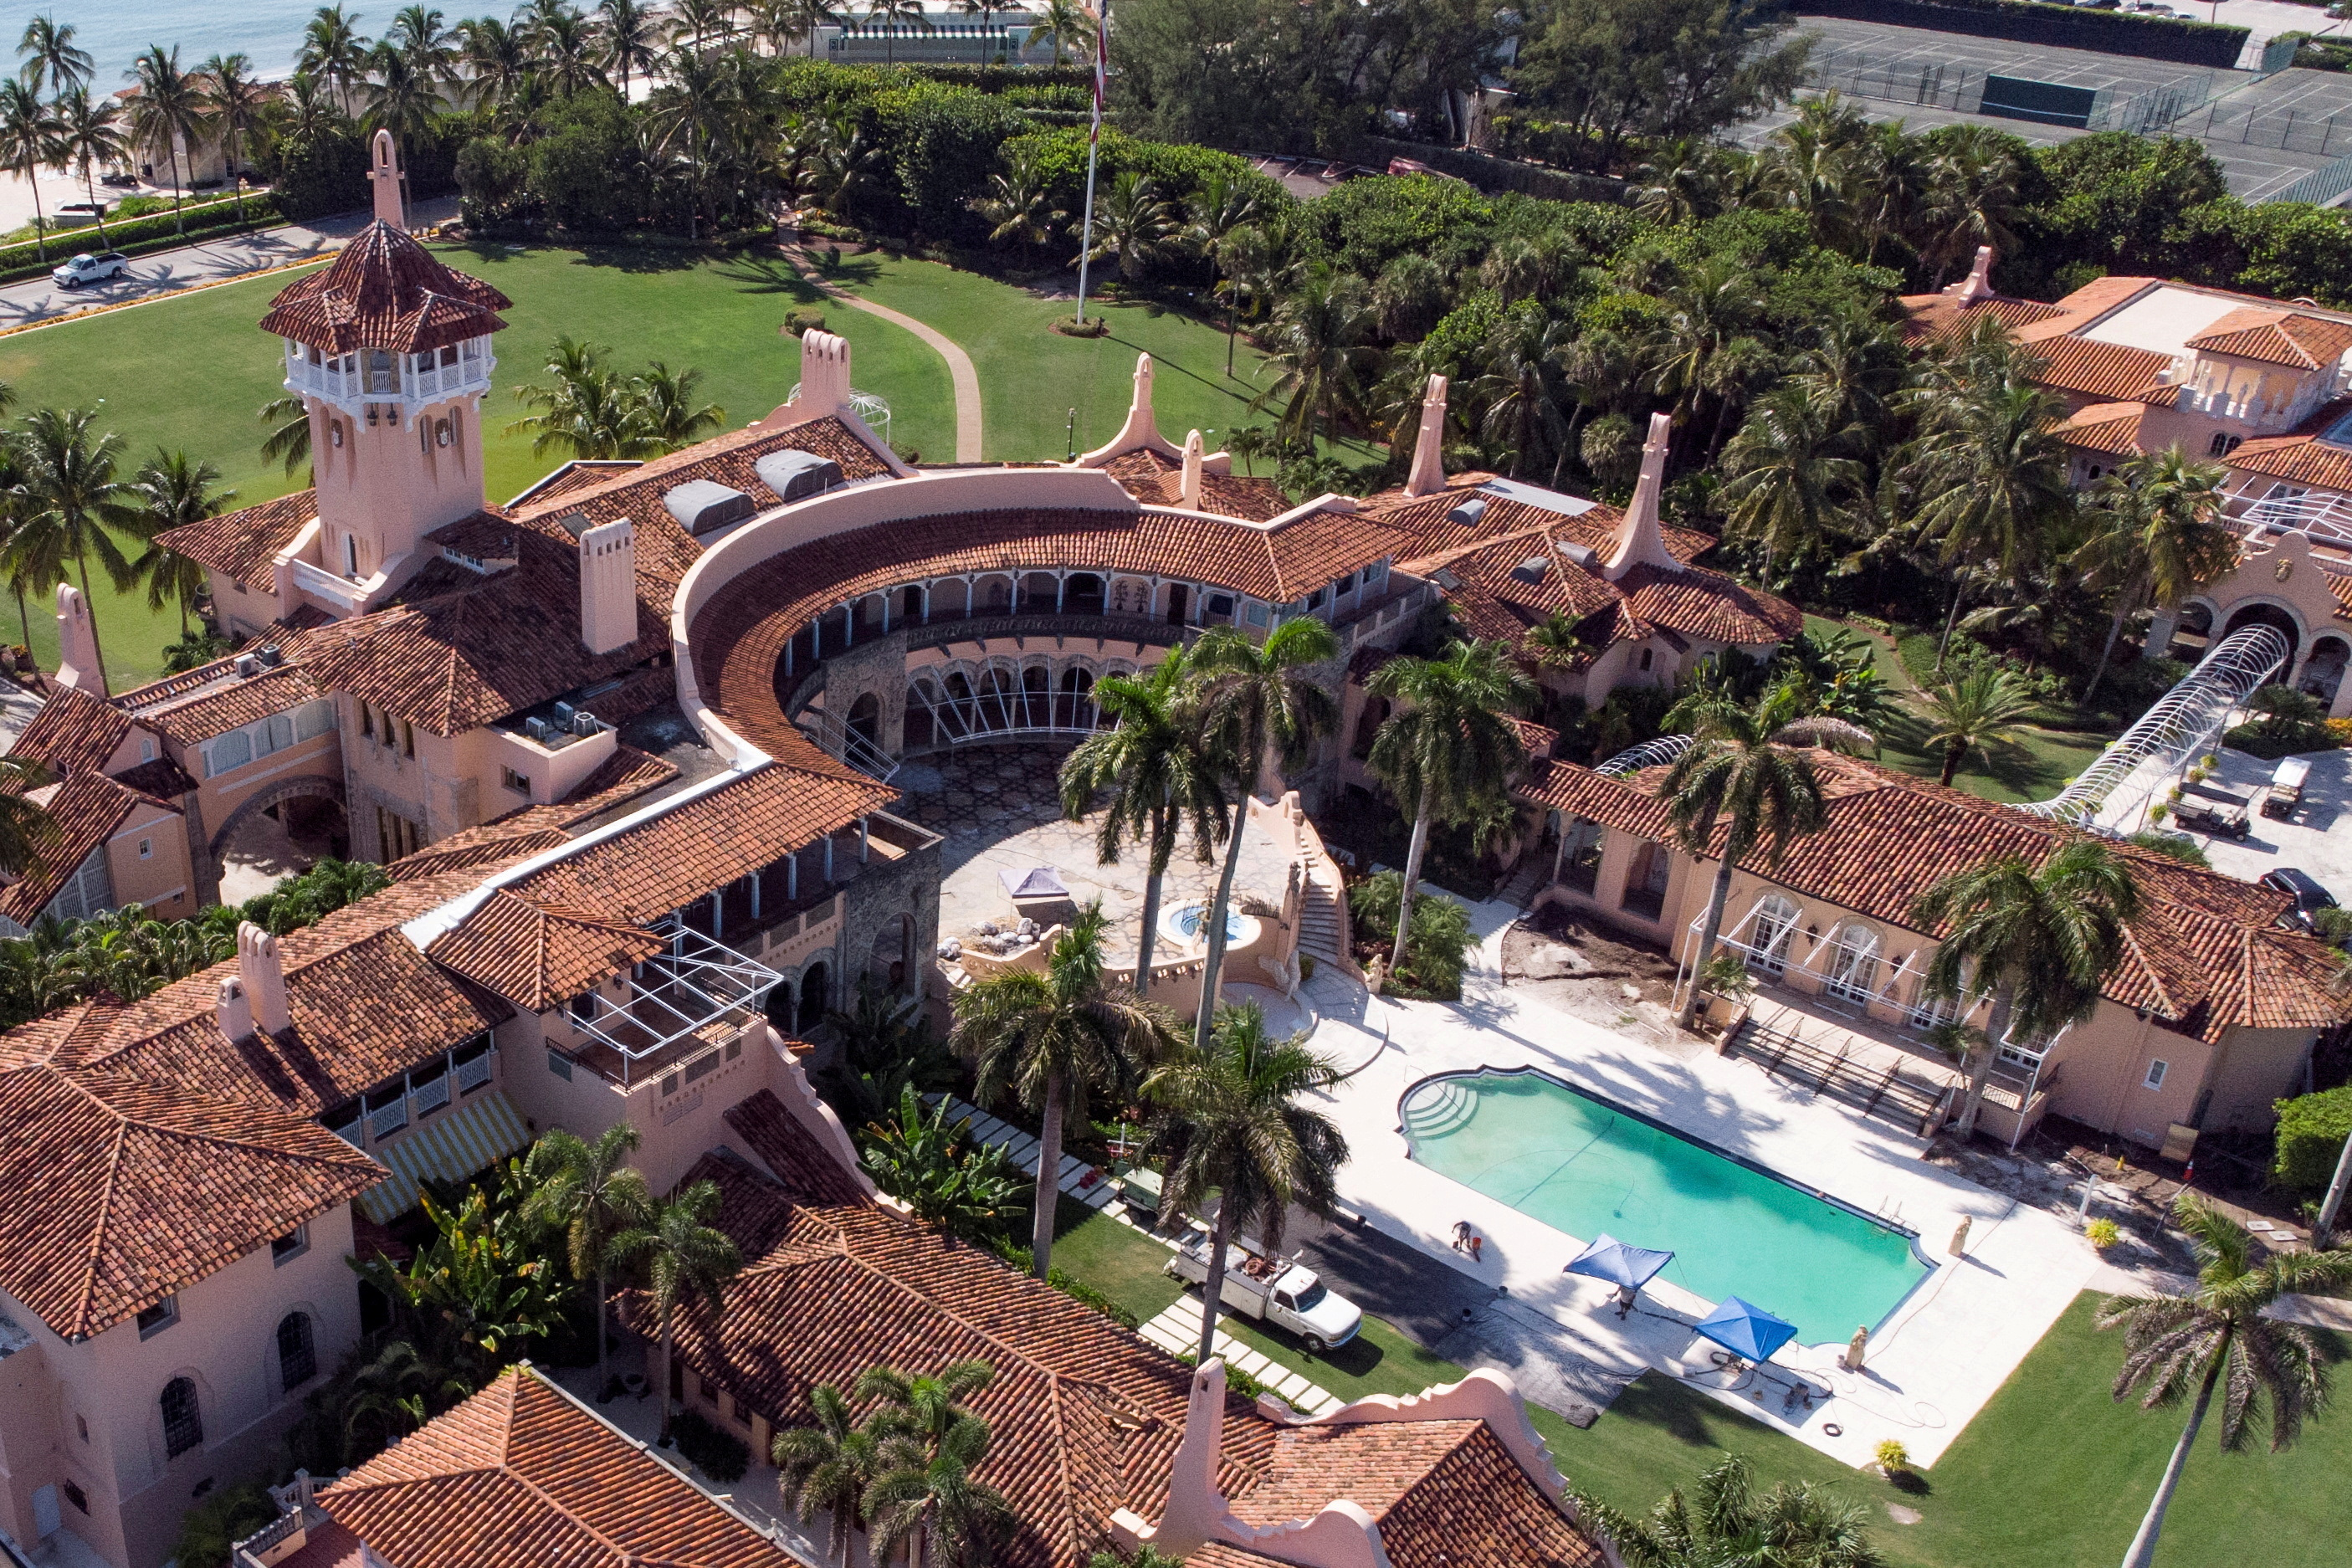 FOTO DE ARCHIVO: Una vista aérea de la casa de Mar-a-Lago del expresidente estadounidense Donald Trump después de que Trump dijera que agentes del FBI la registraron, en Palm Beach, Florida, EE. UU., 15 de agosto de 2022. REUTERS/Marco Bello//Foto de archivo